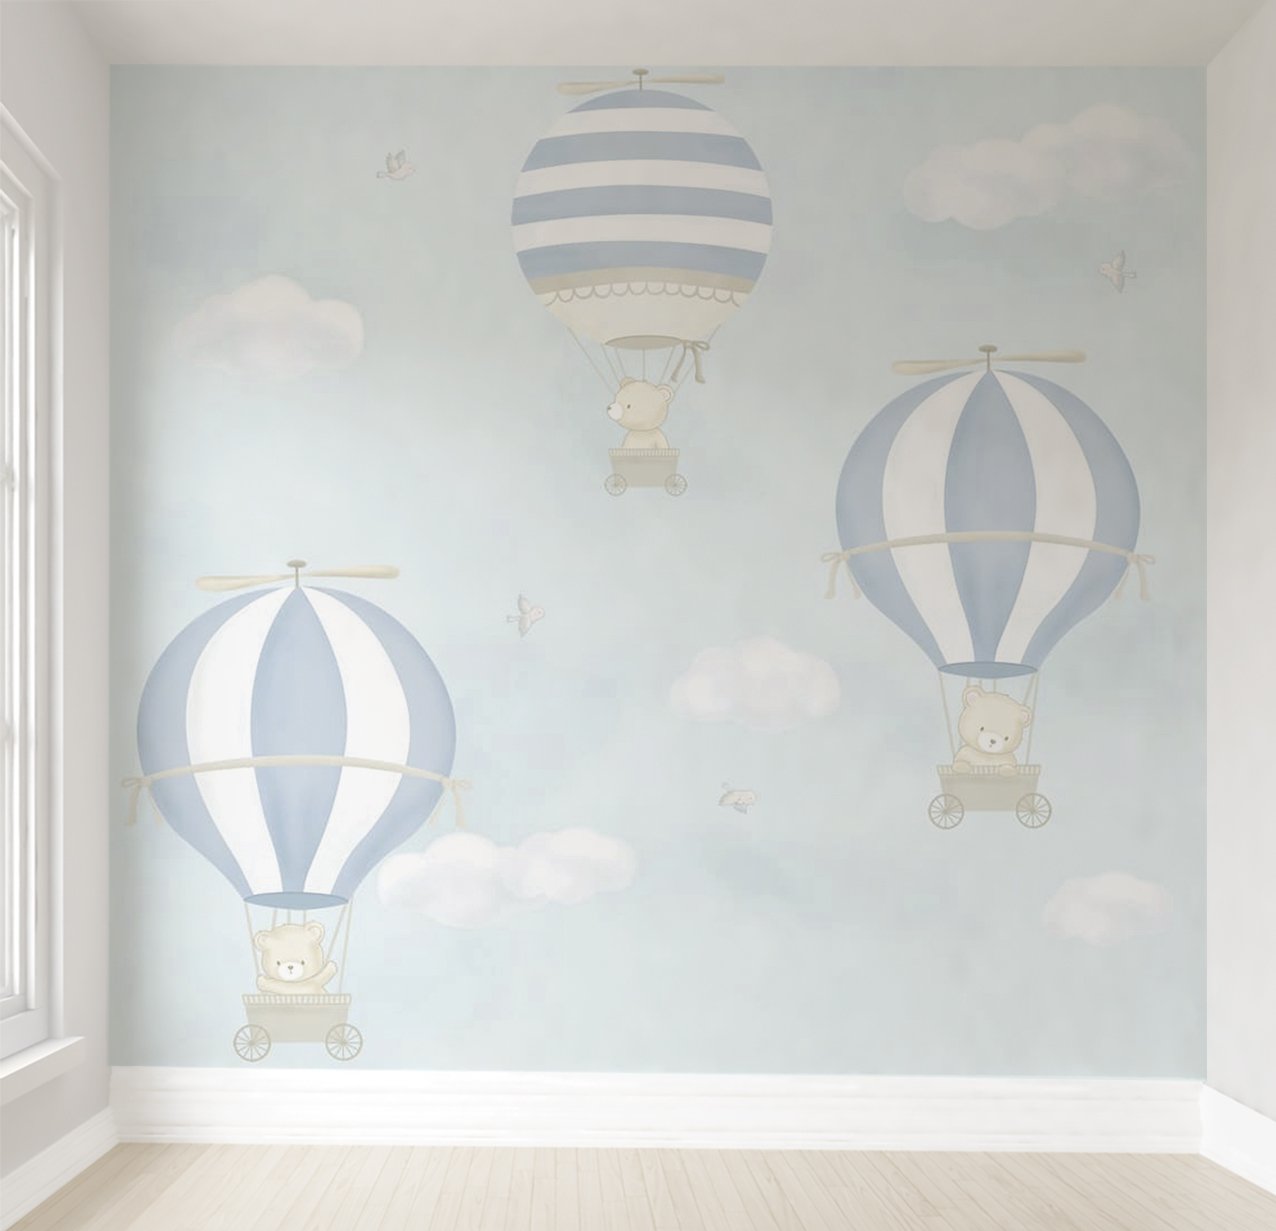 Papel de parede balão azul menino para quarto de bebê infantil M² PP98 - 1